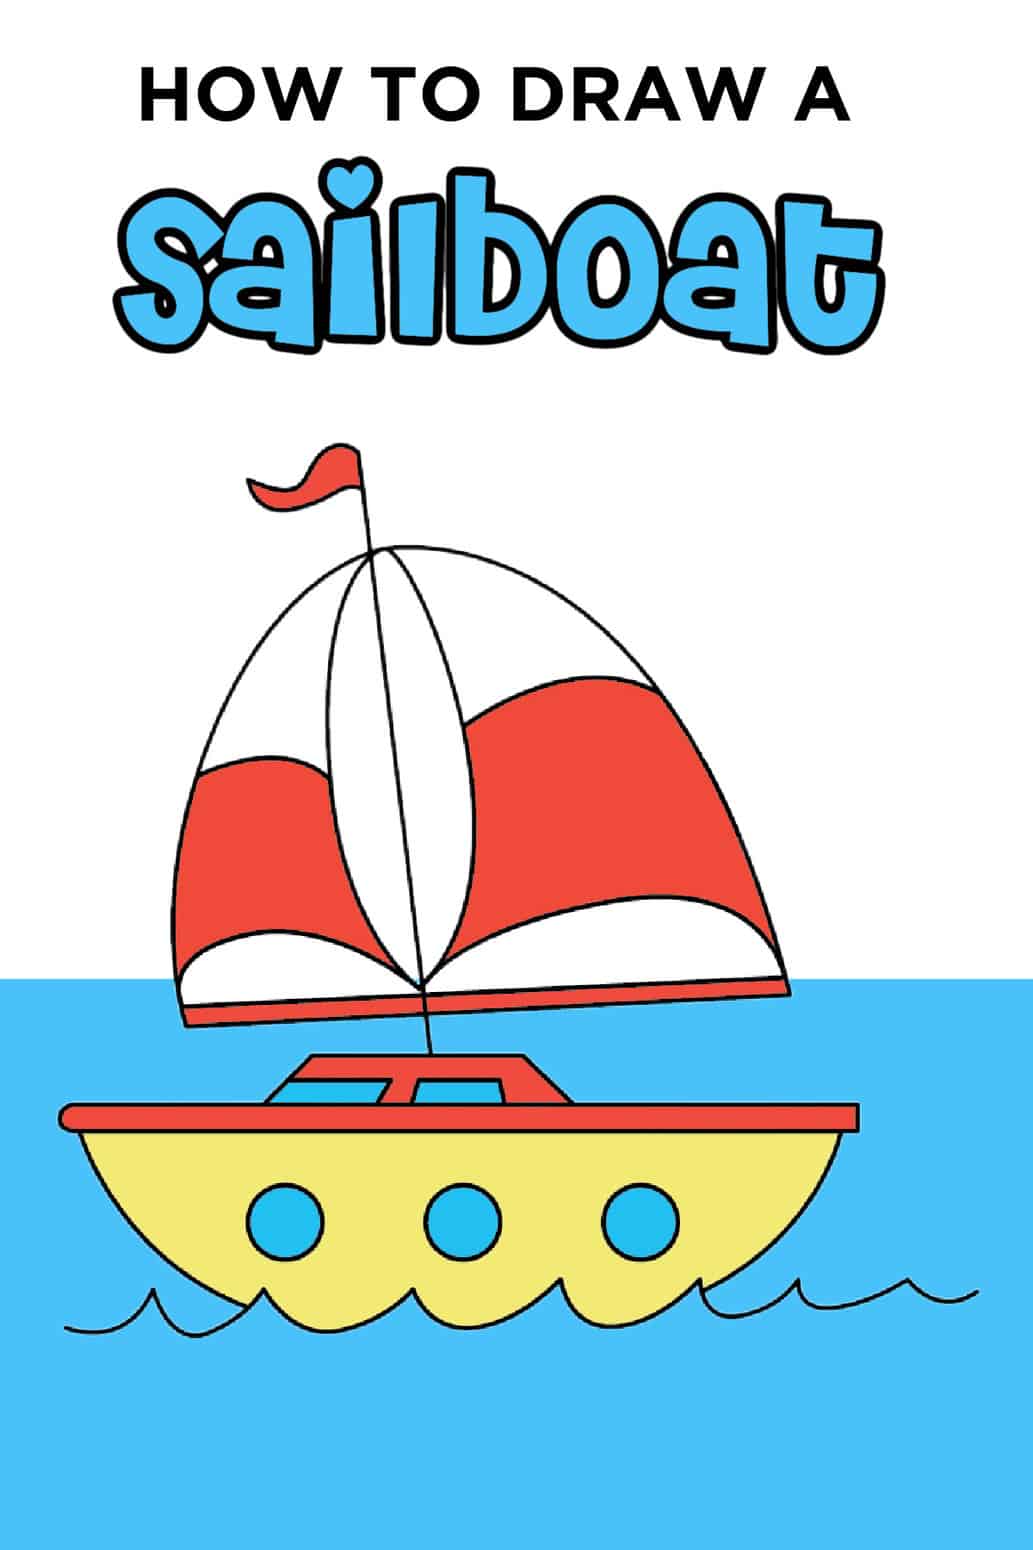 sailboat drawing